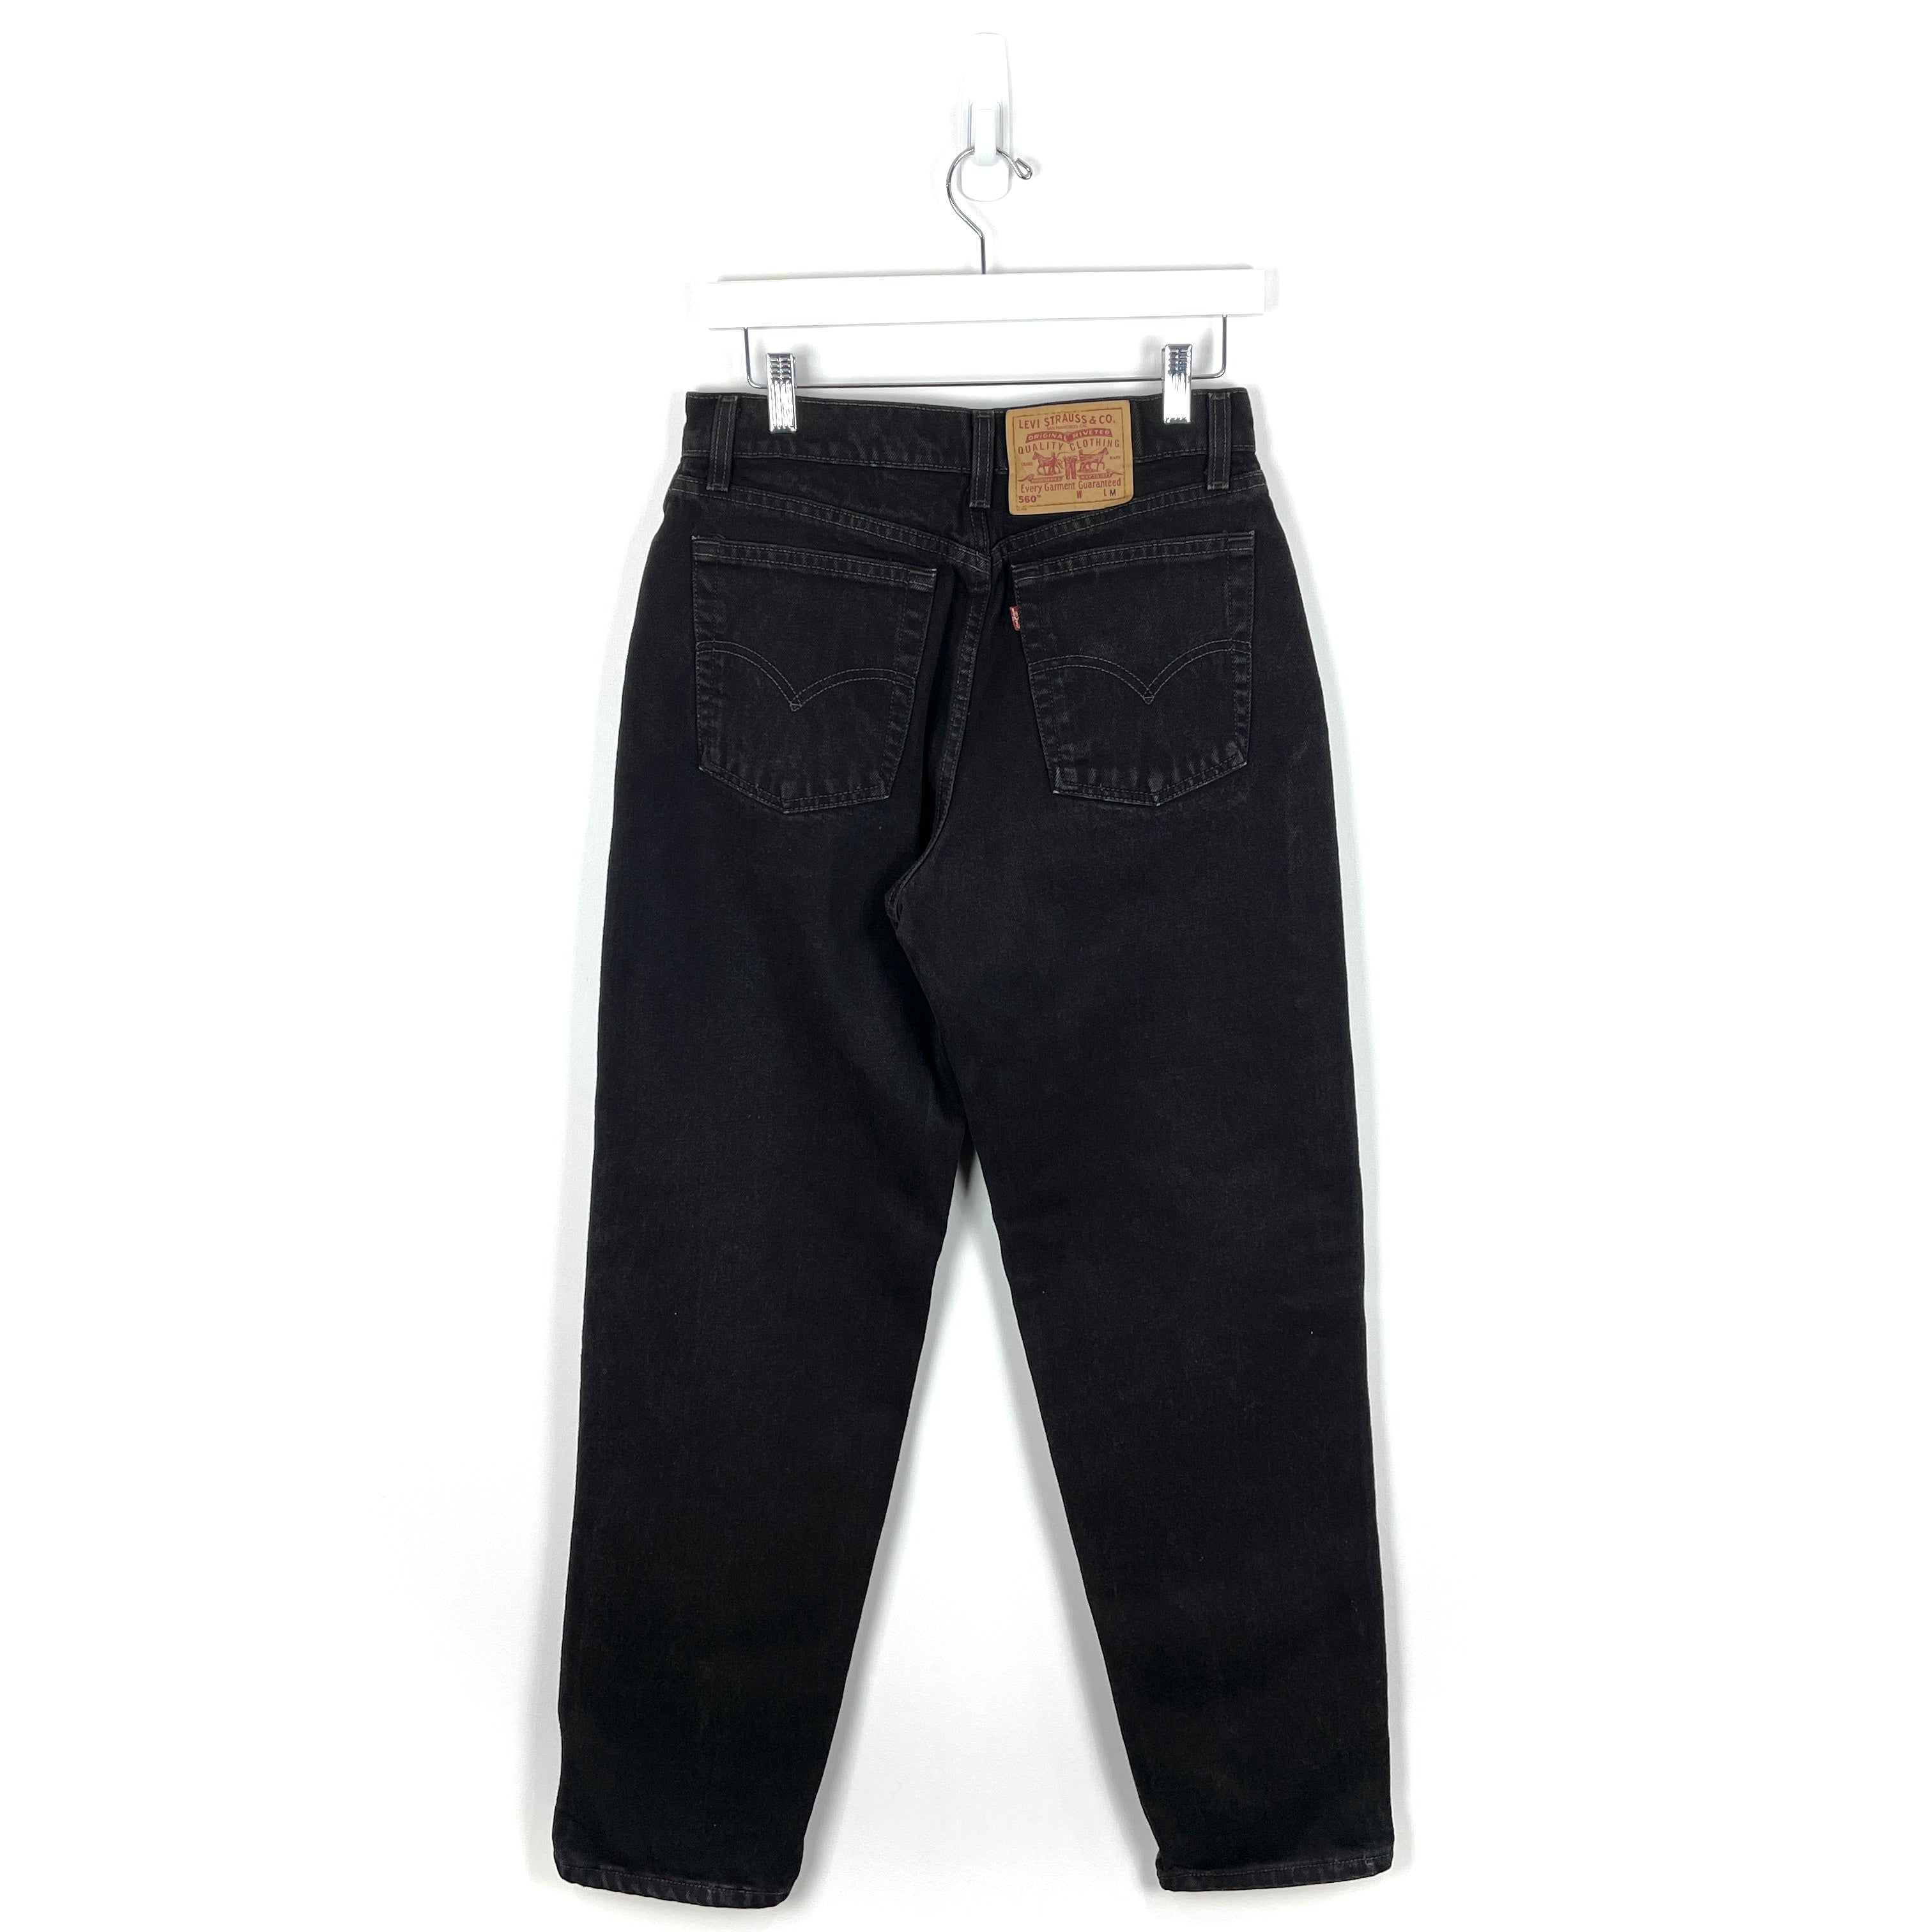 Vintage Levis 560 Jeans - Men's 28/30